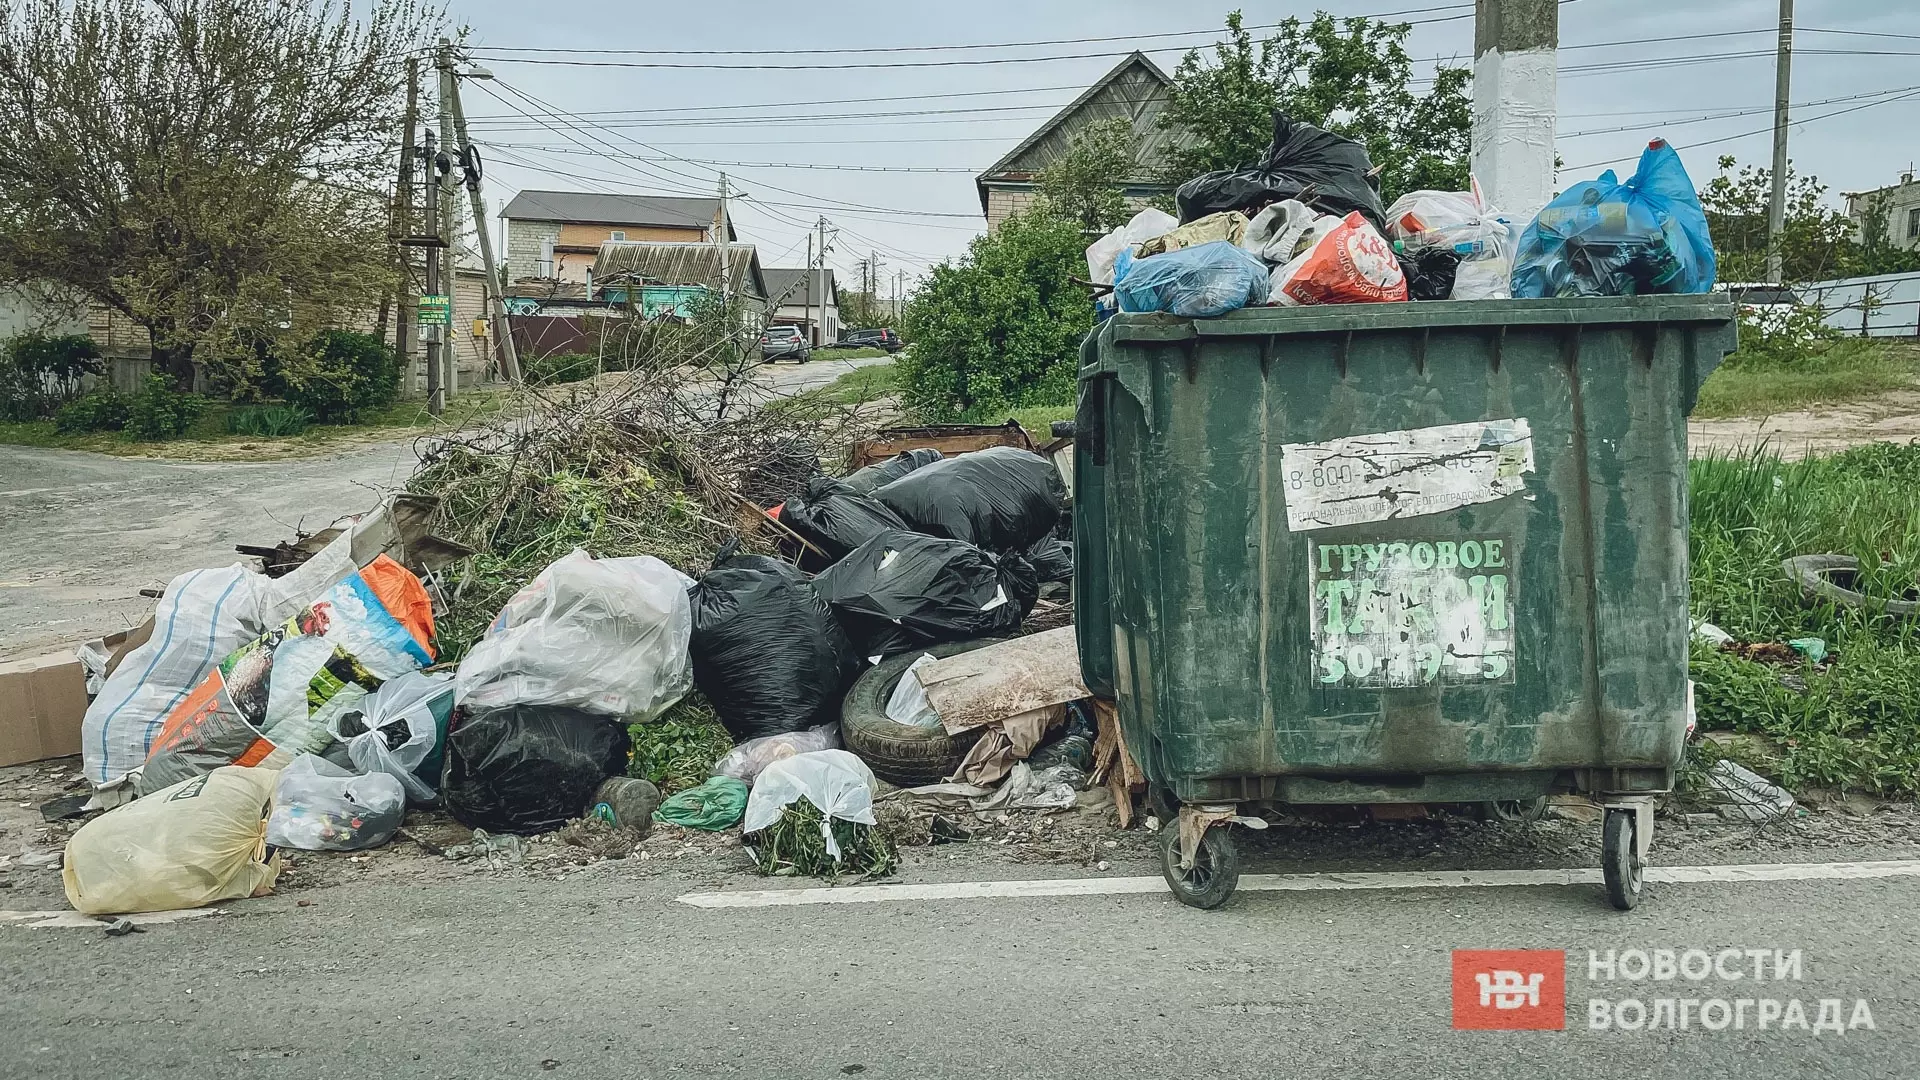 Бизнесмены из Волгограда незаконно сбросили мусор на контейнерные площадки